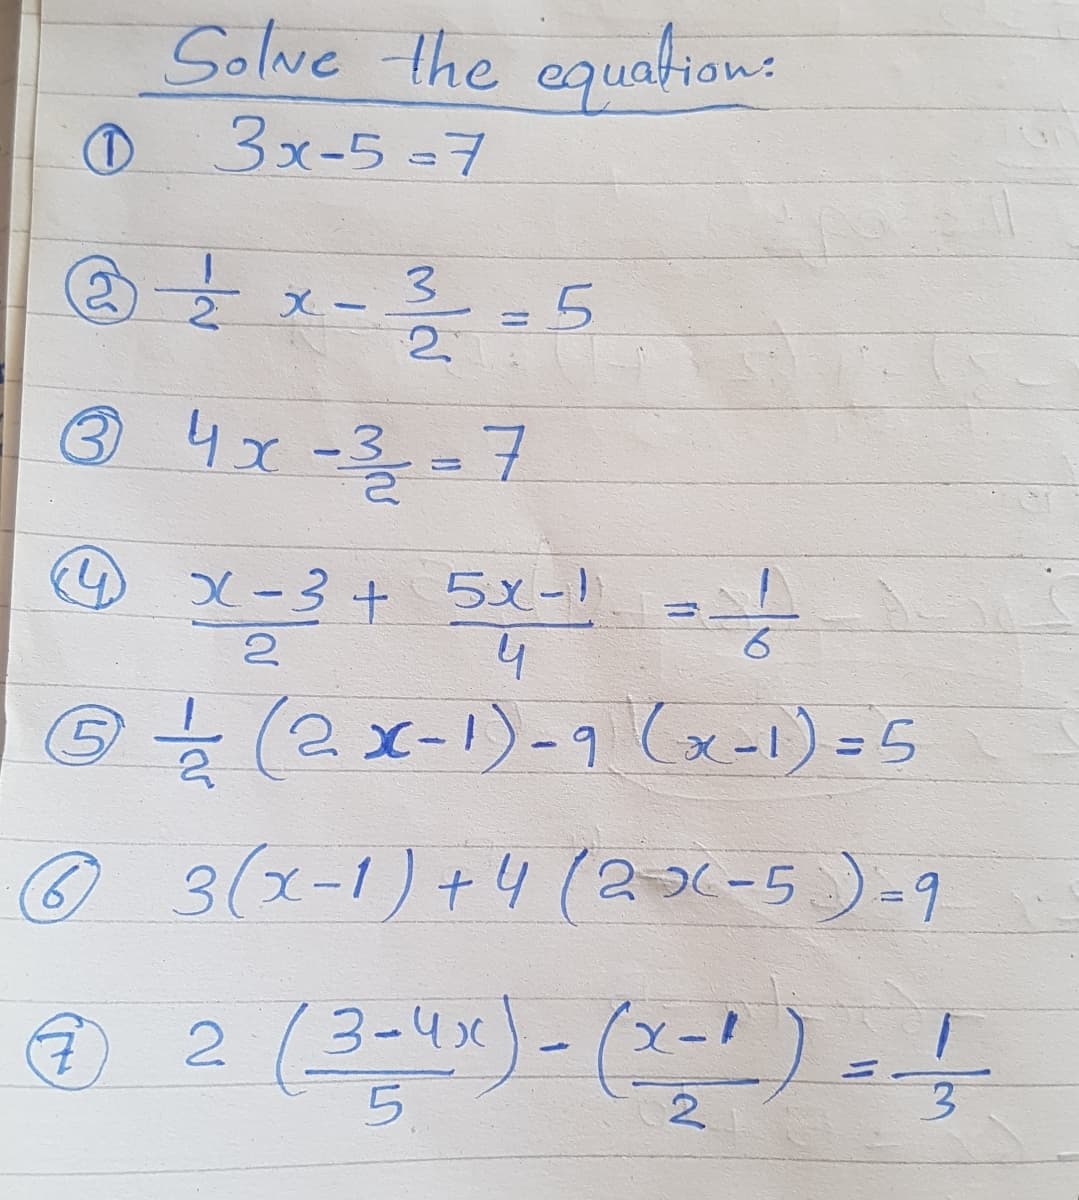 Solve the equation:
3x-5 -커
3.
2.
x-
2.
®
4x-3=7
X-3+ 5x-1
4
x-3.
%3D
3(x-1)+4 (29-5)-9
2 (3-4x)-(x-1) =!
5.
2
3.
